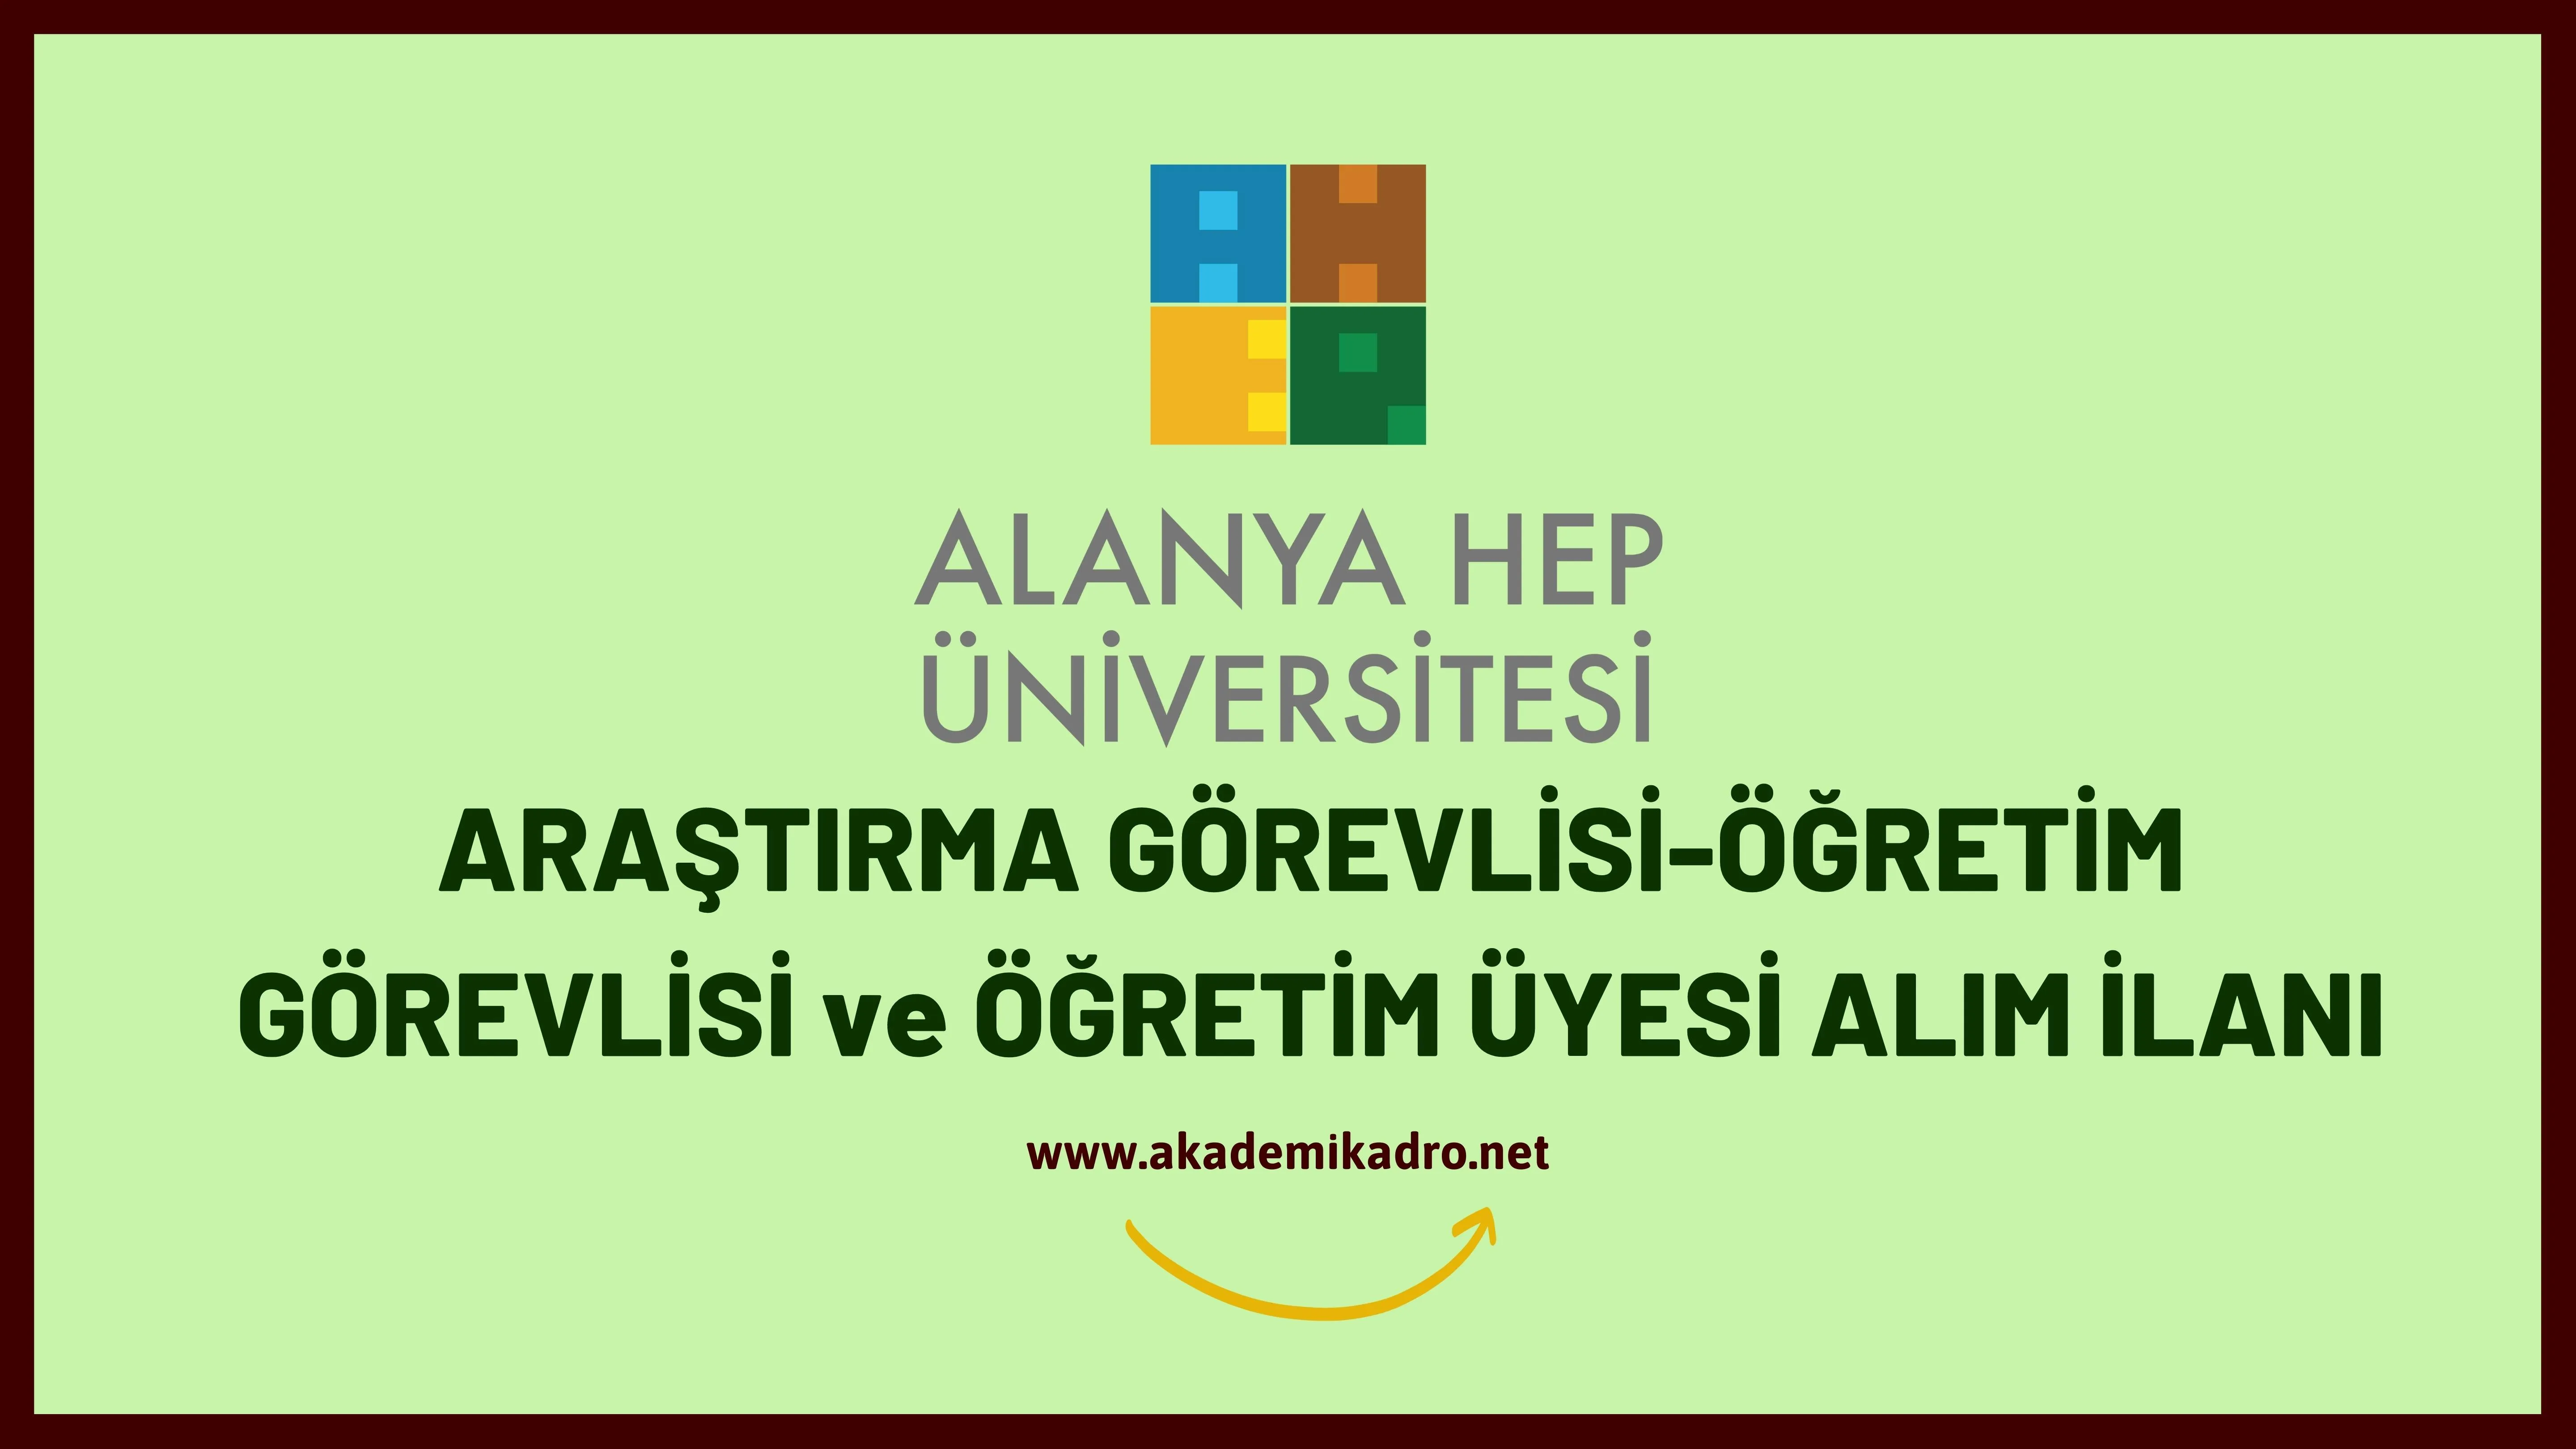 Alanya Hamdullah Emin Paşa Üniversitesi Araştırma görevlisi, Öğretim görevlisi ve Öğretim üyesi olmak üzere 13 Öğretim elemanı alacak.Son başvuru tarihi 09 Eylül 2022.